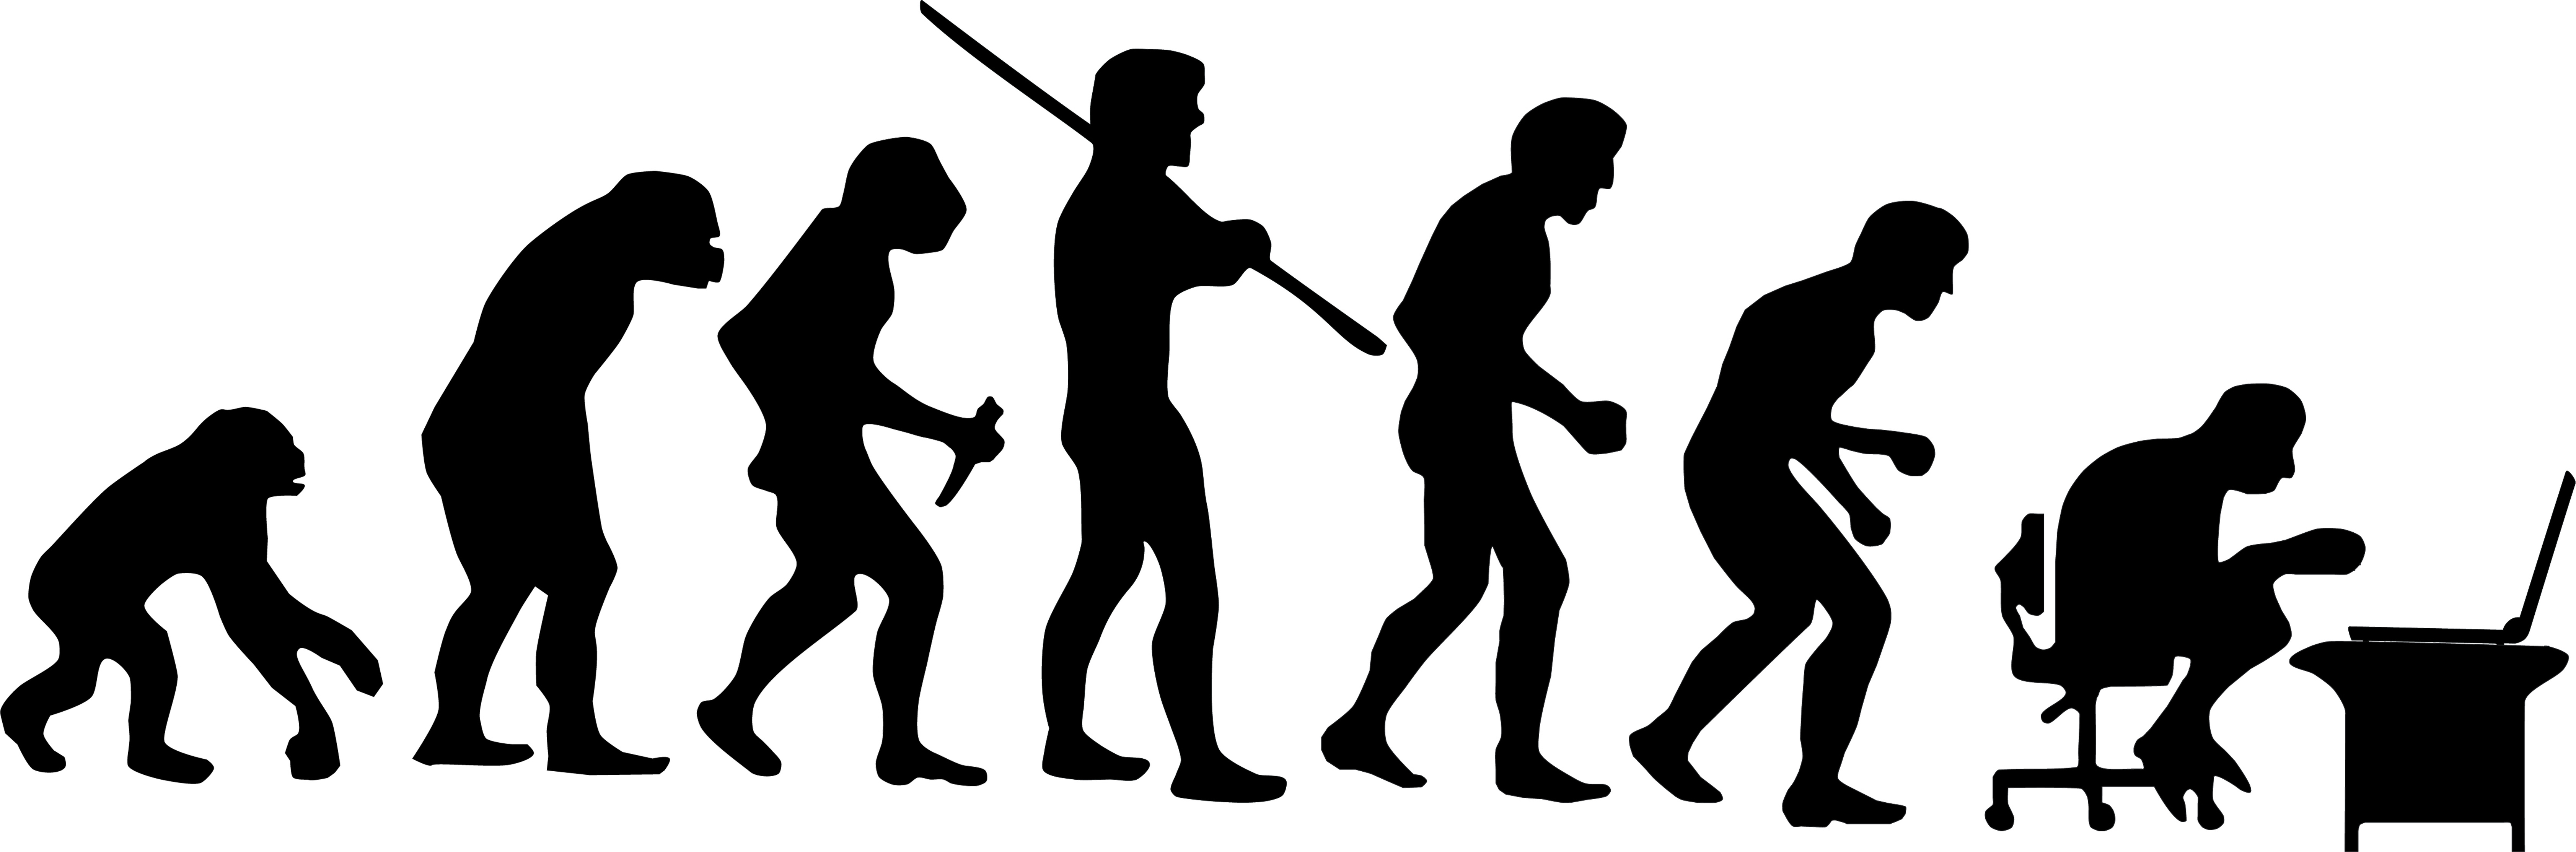 Эволюция человека вектор